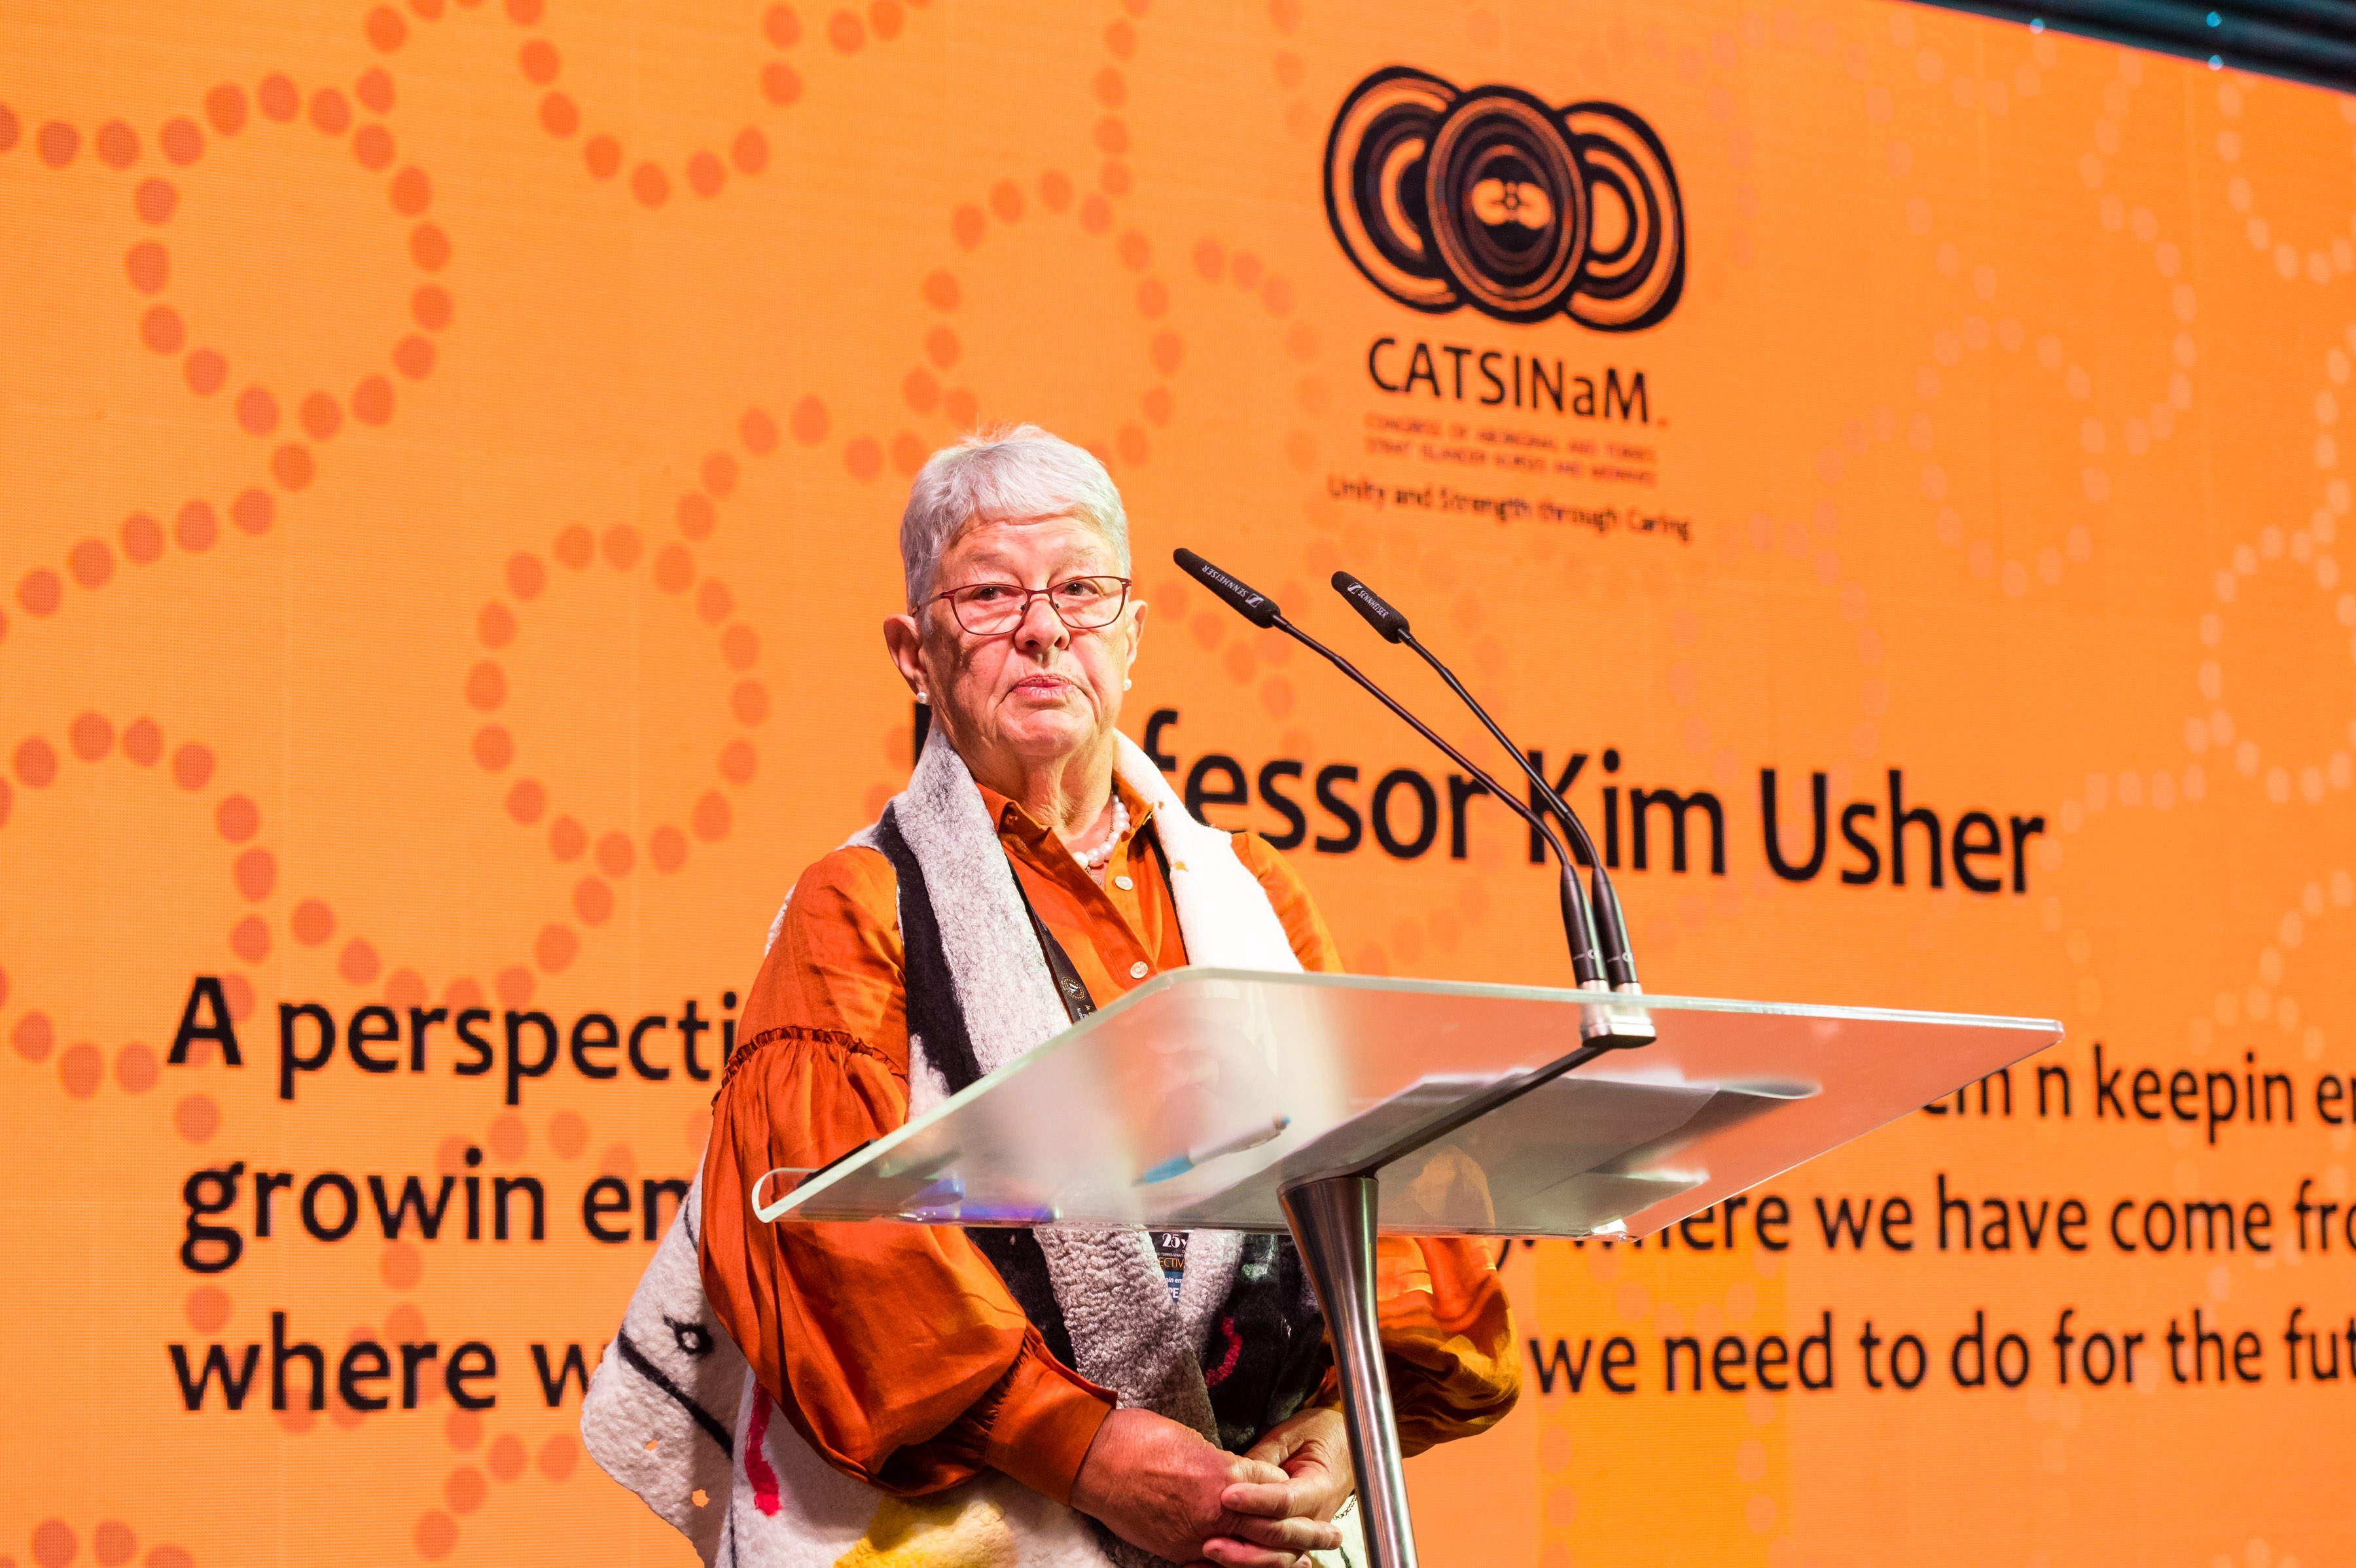 Senior woman wearing orange shirt on stage at podium looks at camera